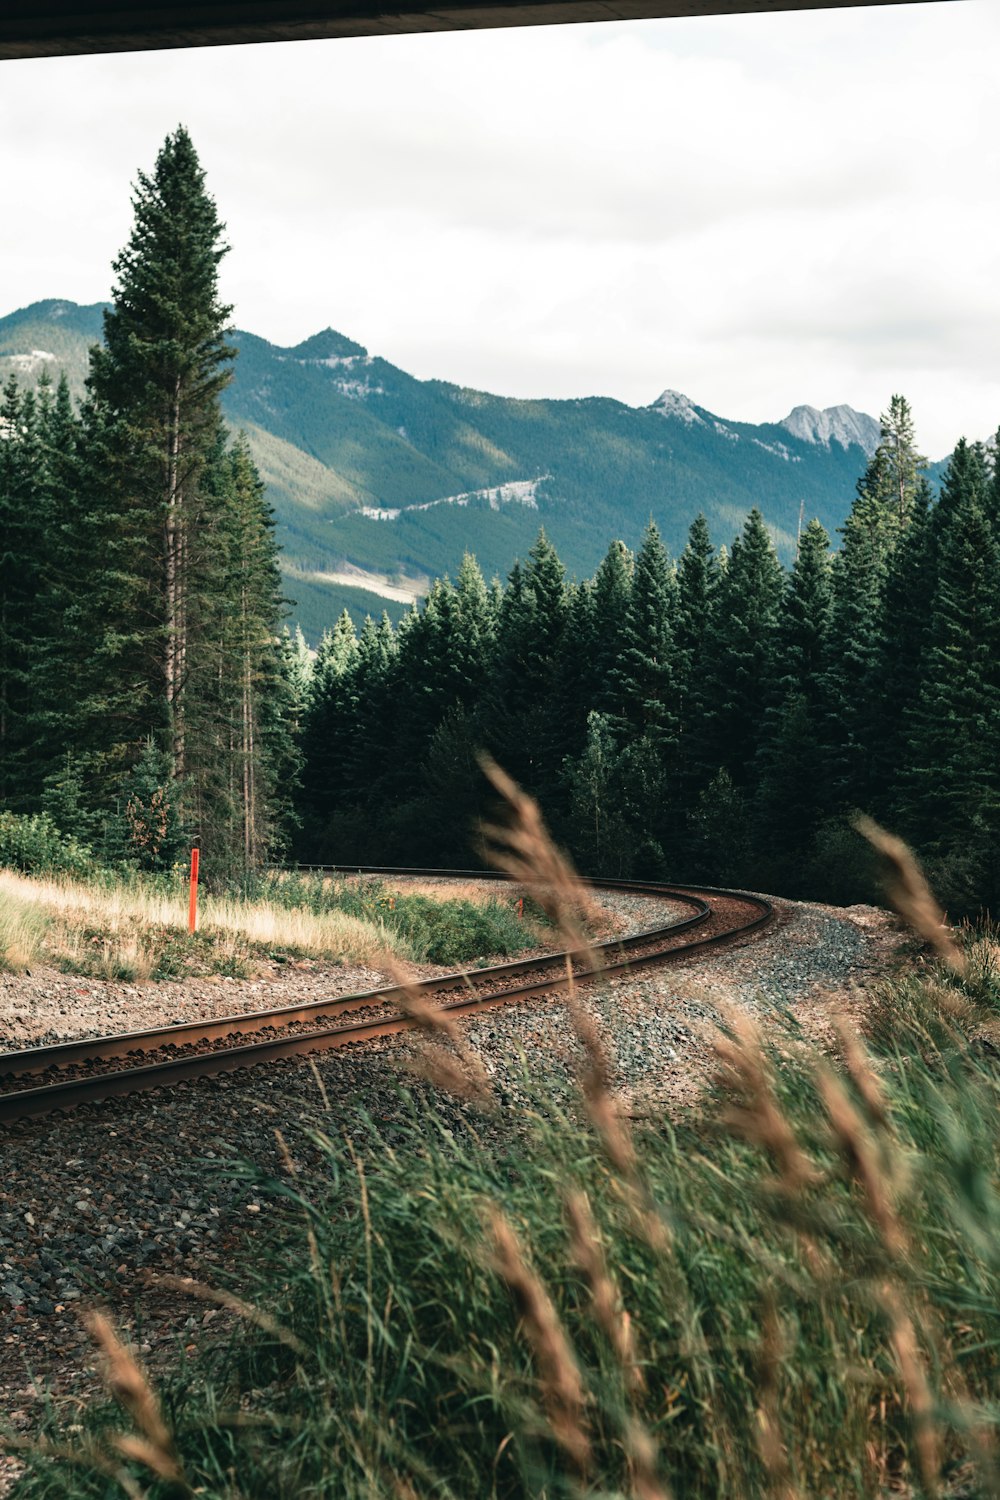 ferrovia del treno vicino a pini verdi e montagne durante il giorno